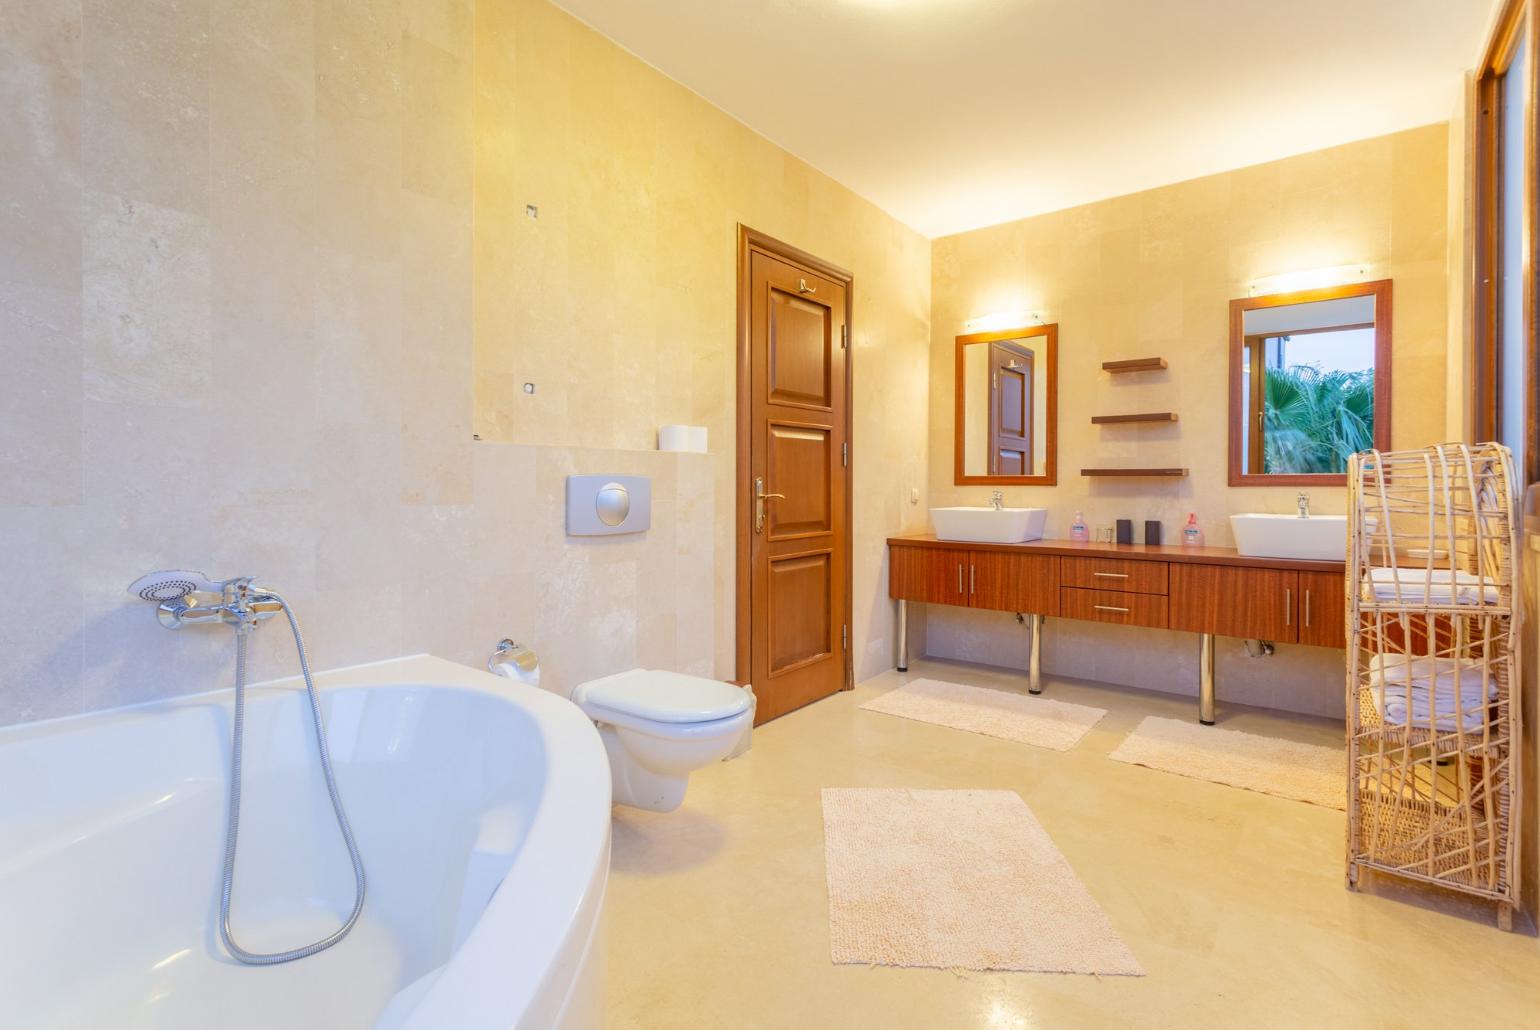 En suite bathroom with spa bath and shower